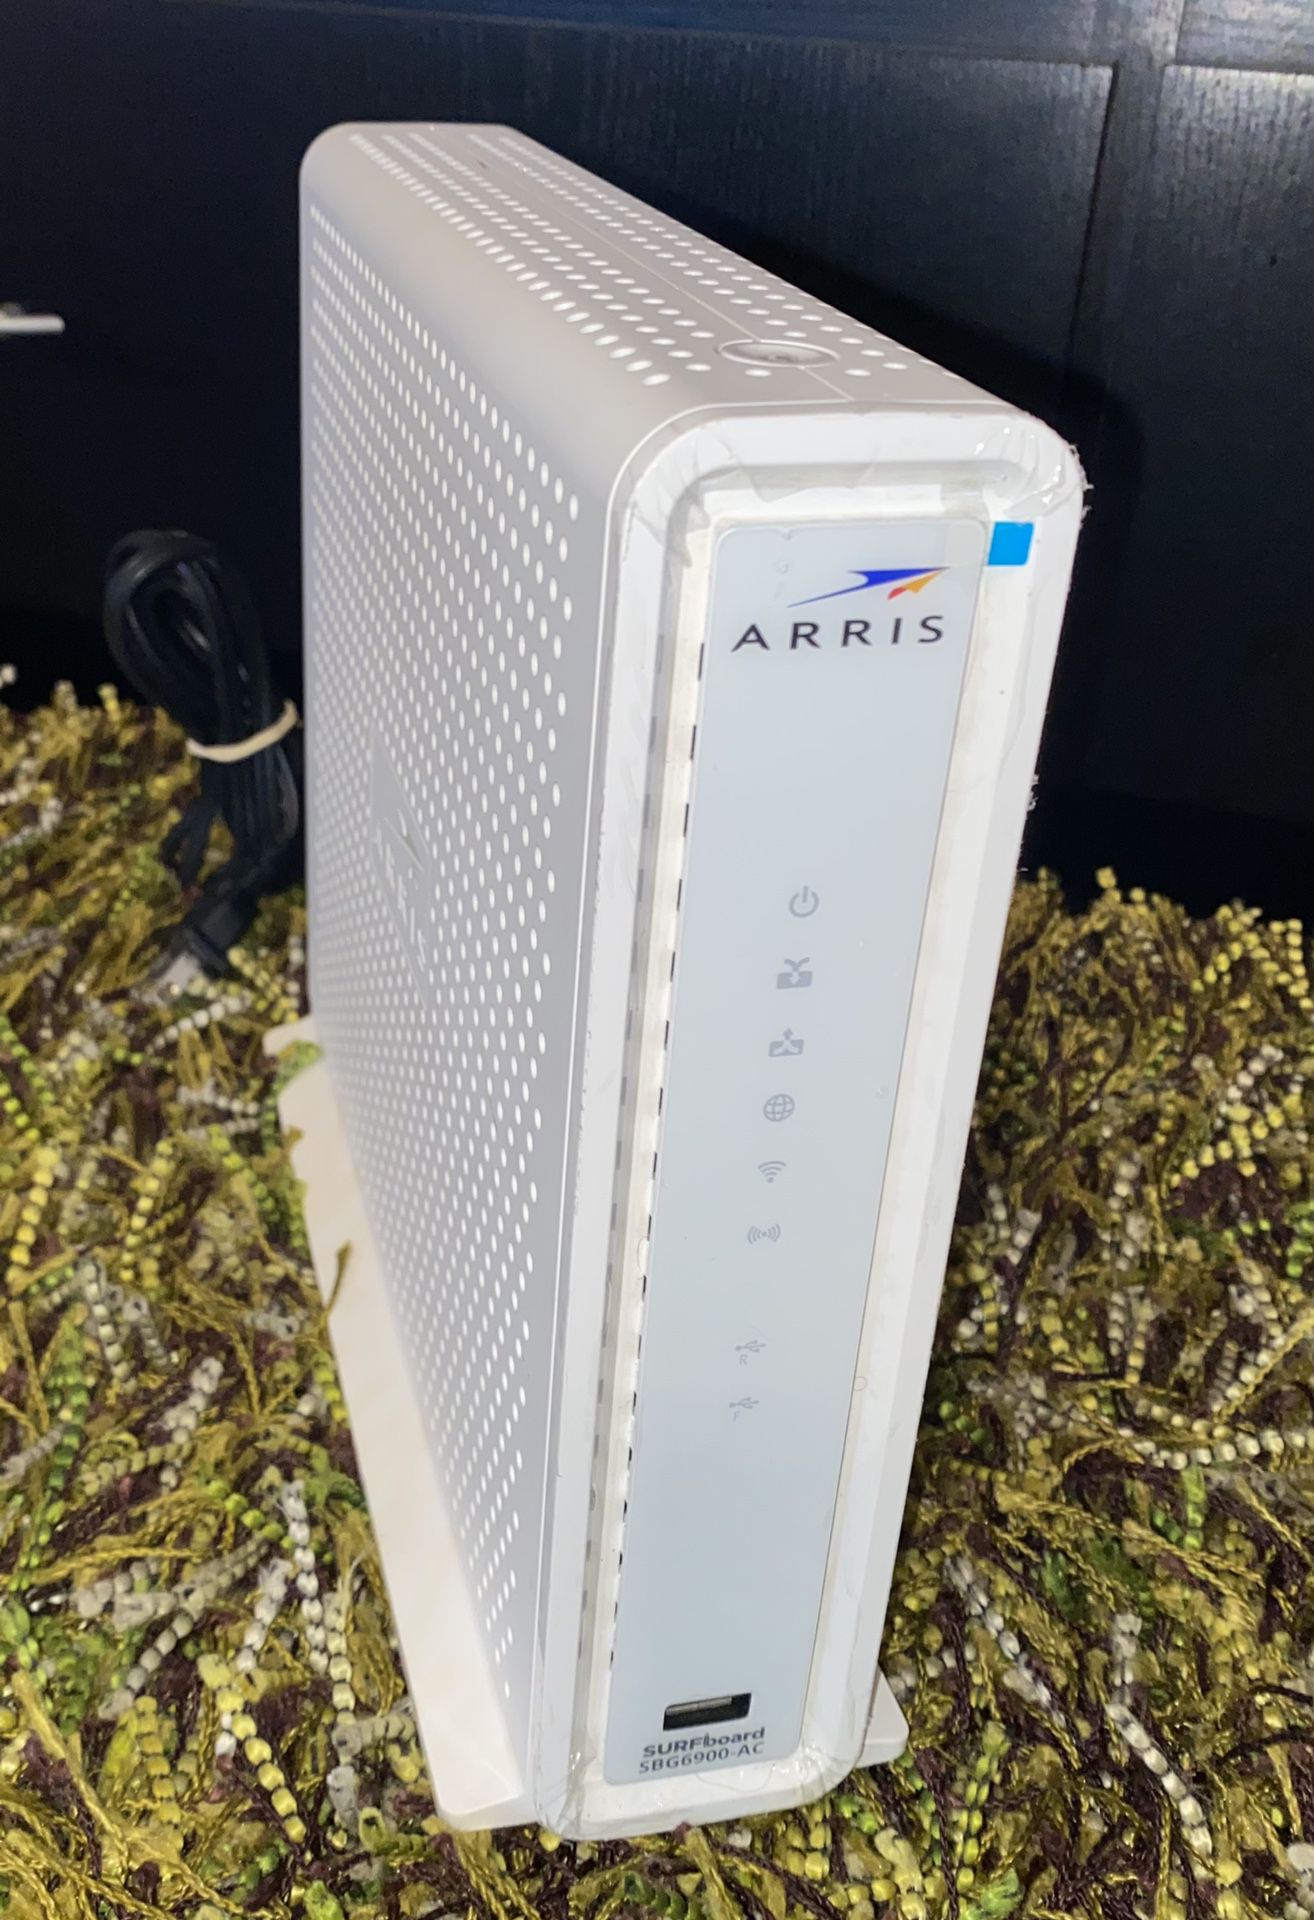 ARRIS SURFboard SBG6900-AC Modem/Wireless Router